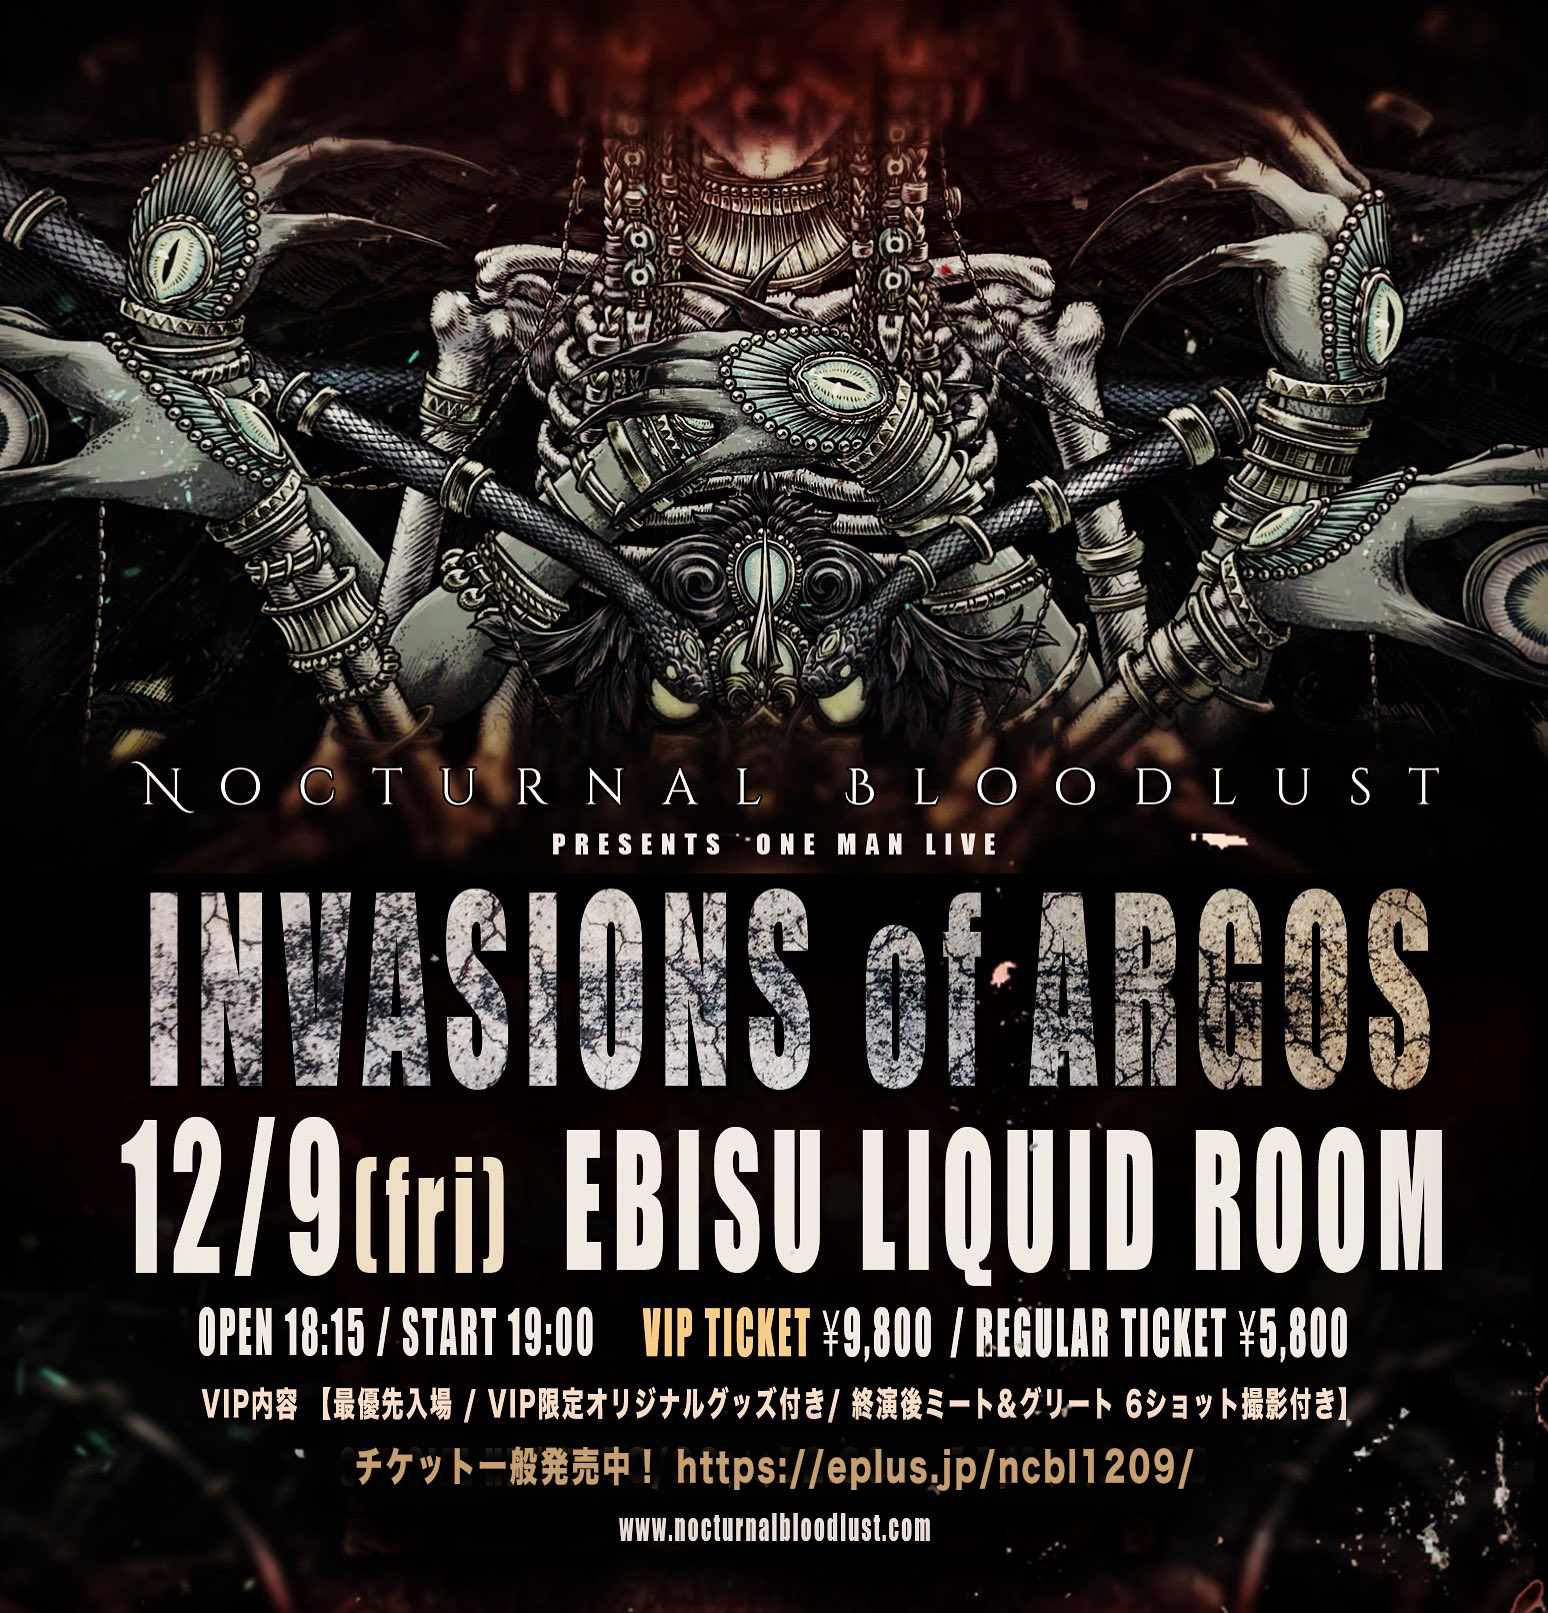 12月9日 LIQUIDROOM公演 “INVASIONS of ARGOS” に関しまして